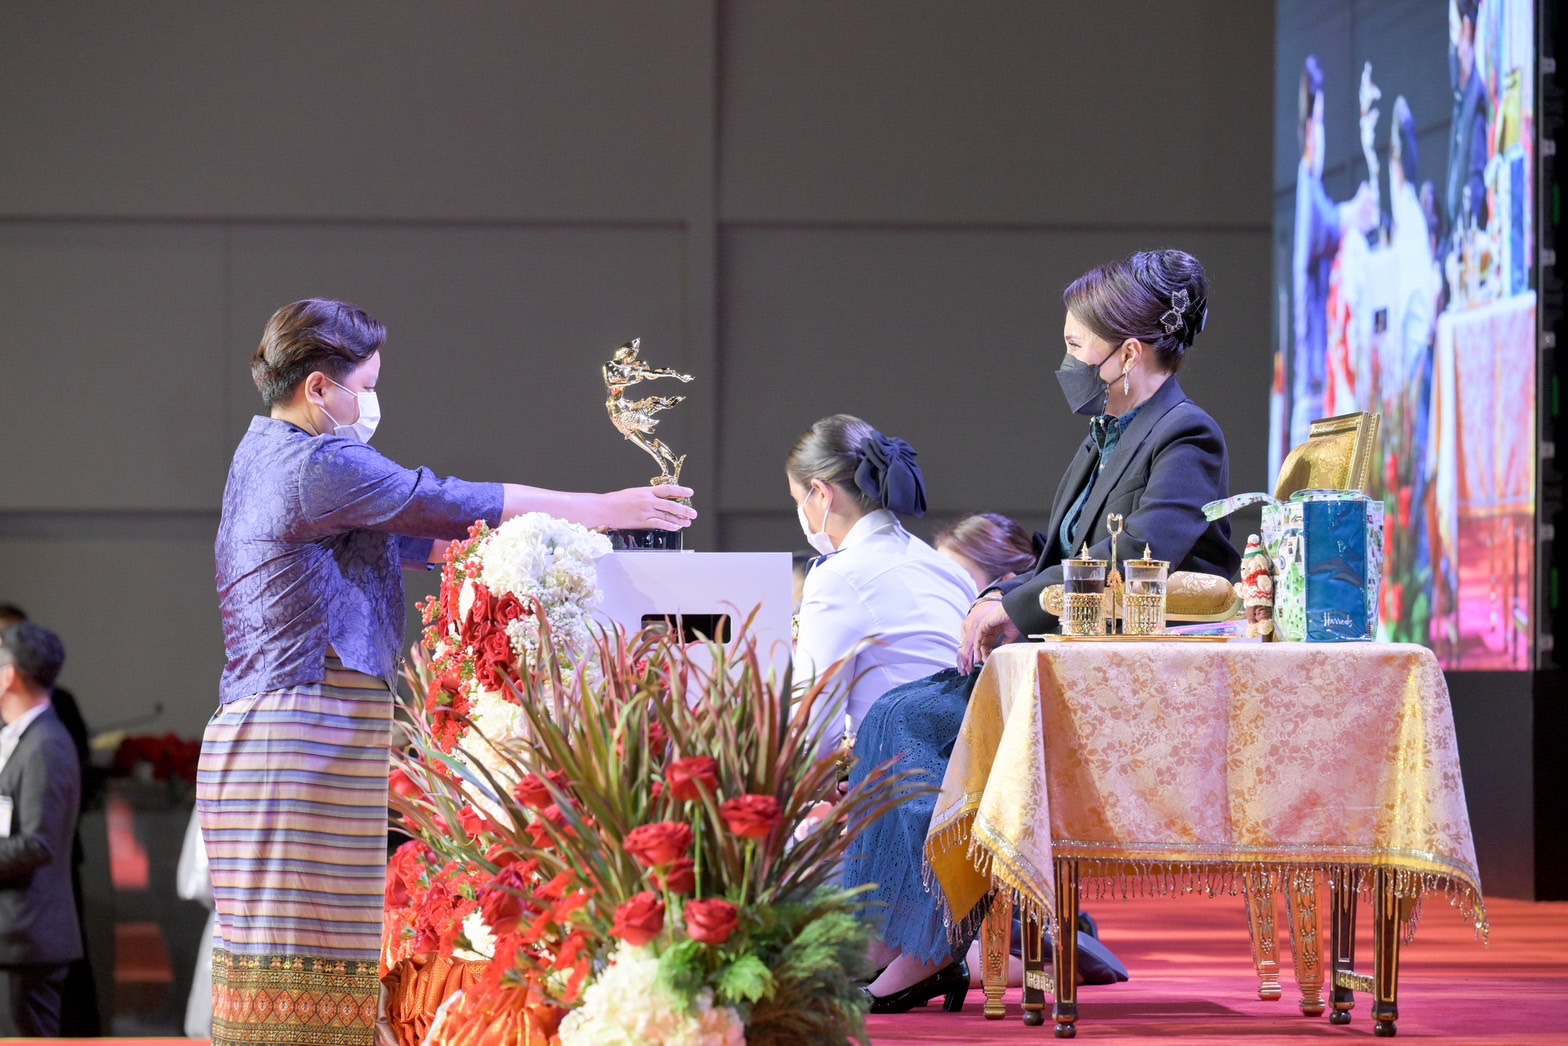 พิพิธภัณฑ์เรือนโบราณล้านนา มช. เข้ารับพระราชทานรางวัลอุตสาหกรรมท่องเที่ยวไทย (Thailand Tourism Awards) ครั้งที่ 14 ประจำปี 2566 